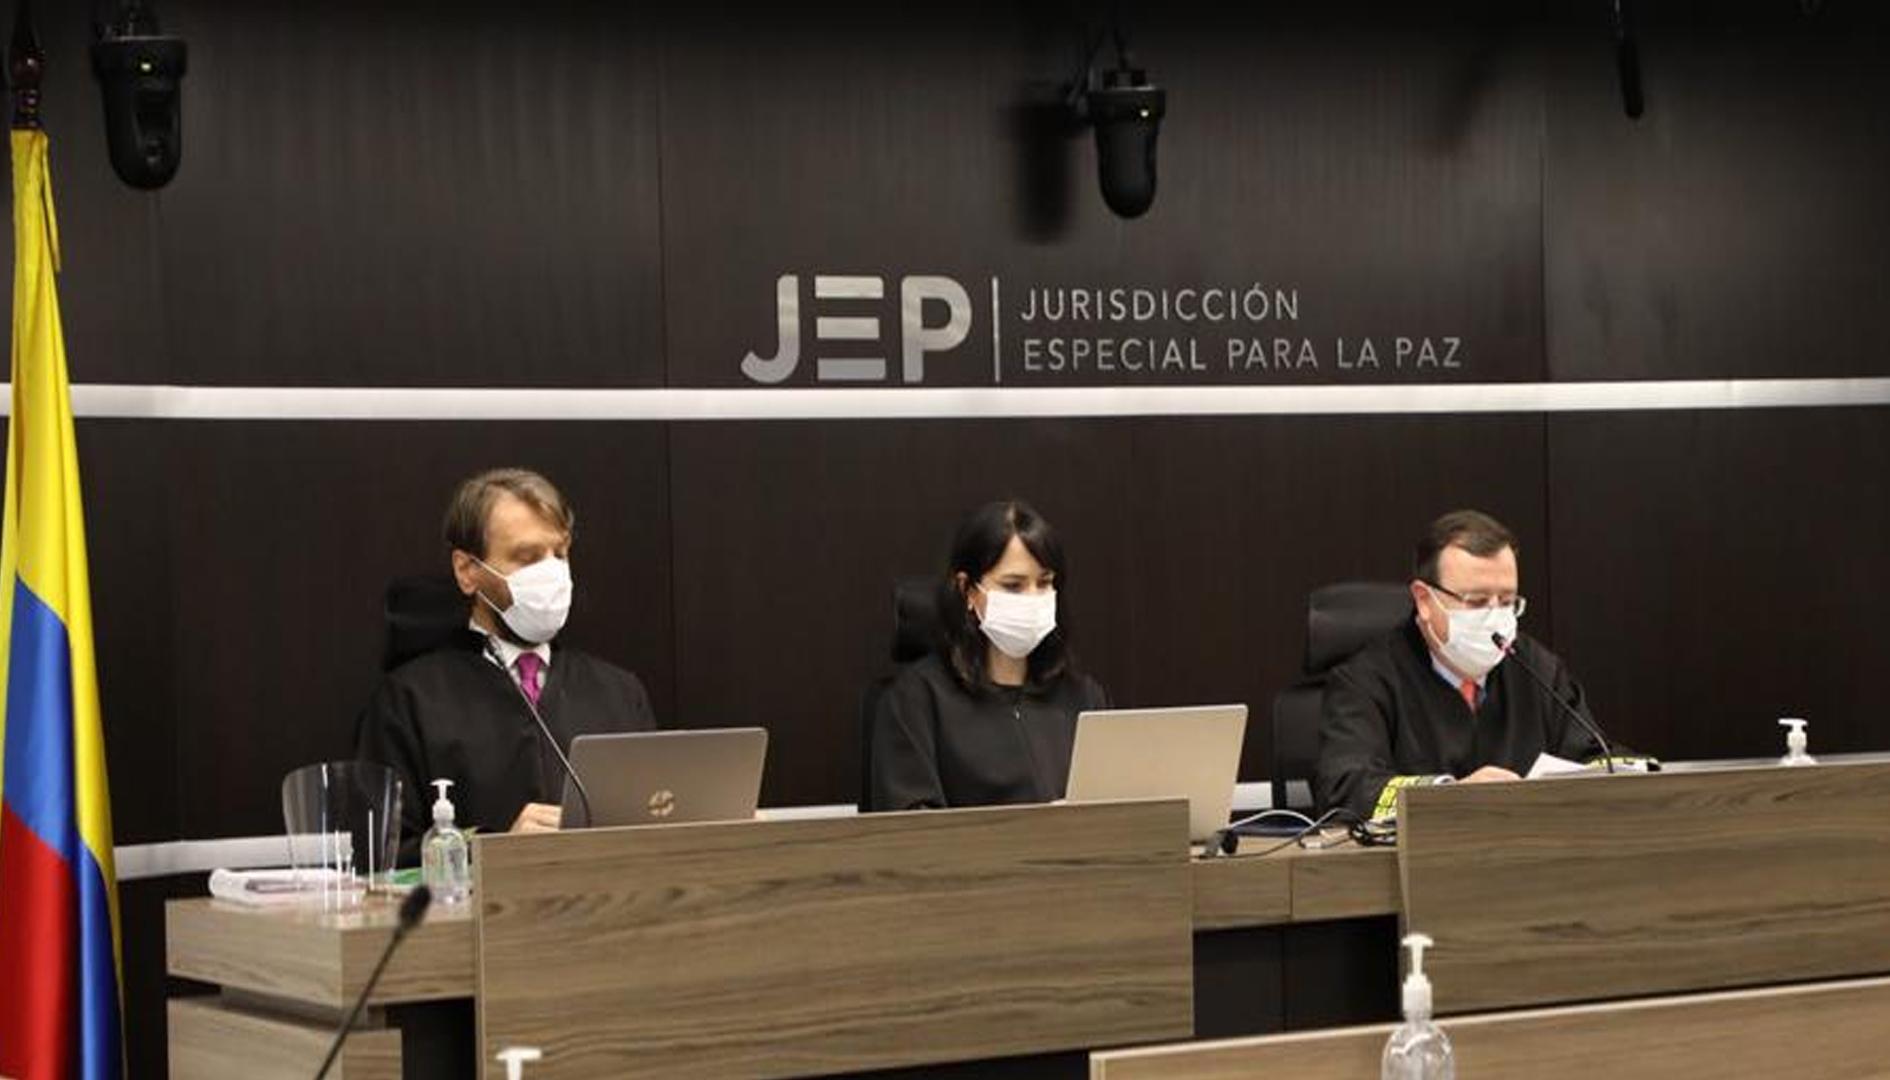 Jurisdicción Especial para la Paz, JEP. 